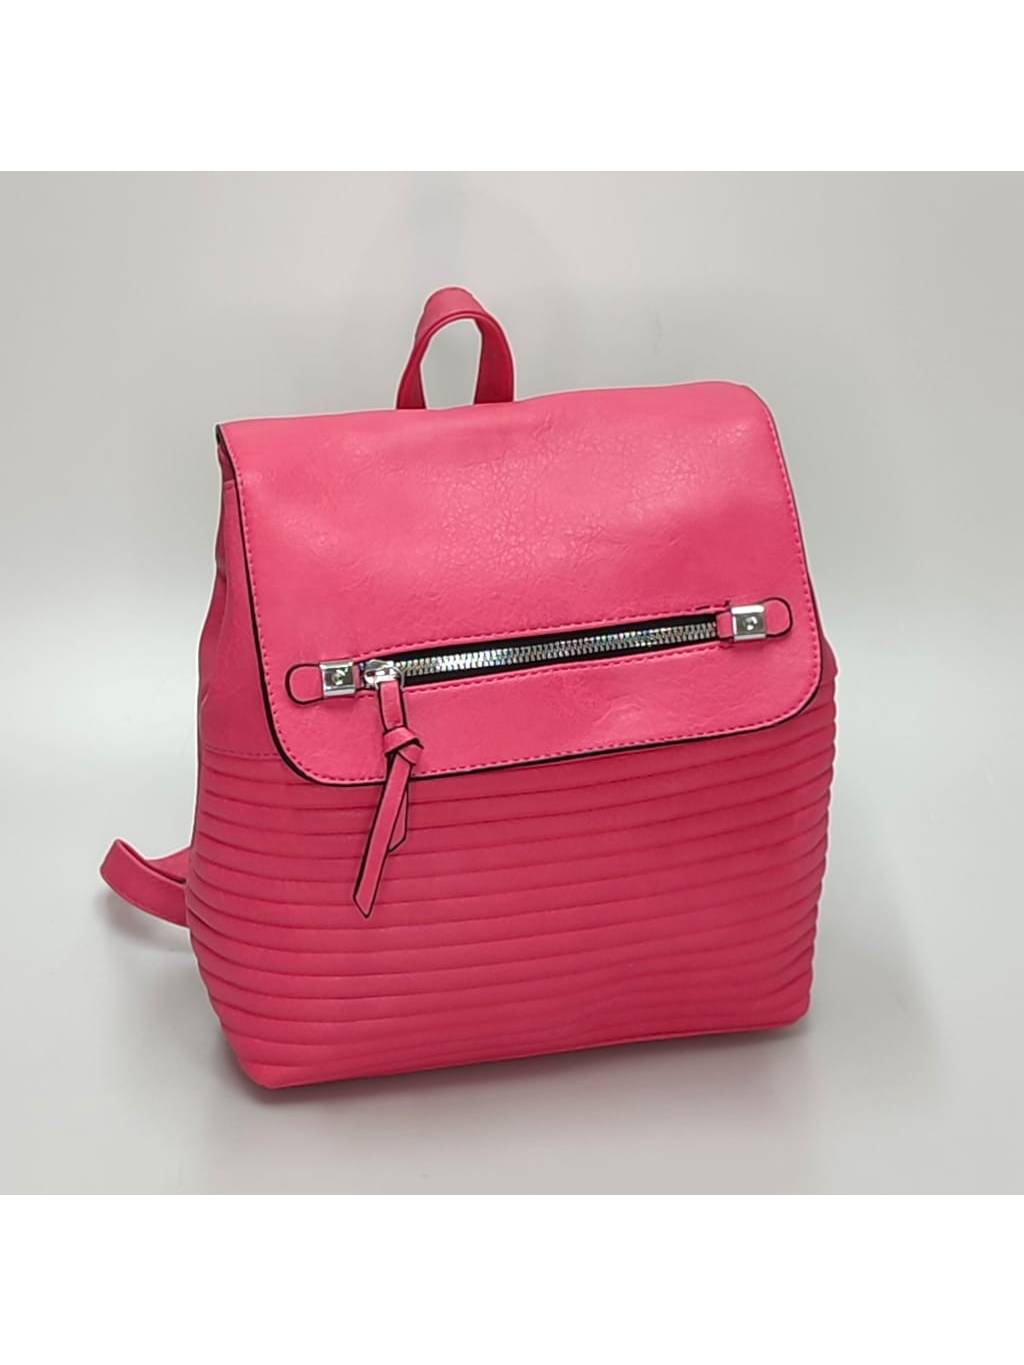 Dámsky ruksak 8625 tmavo ružový www.kabelky vypredaj (17)